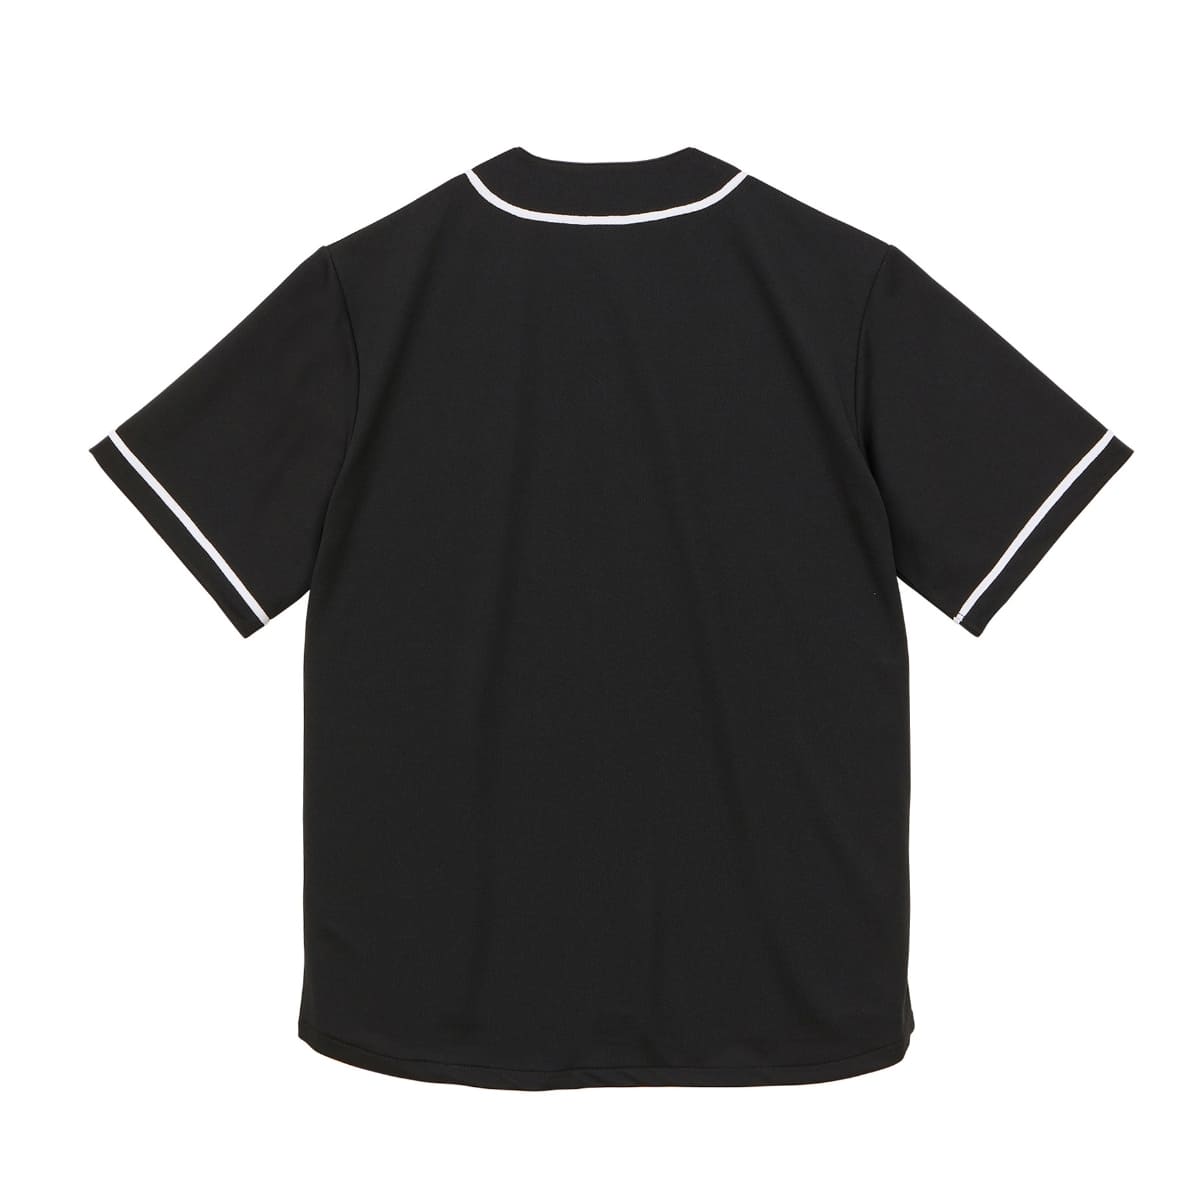 4.1オンス ドライアスレチック ベースボールシャツ | メンズ | 1枚 | 5982-01 | ラベンダー/ホワイト